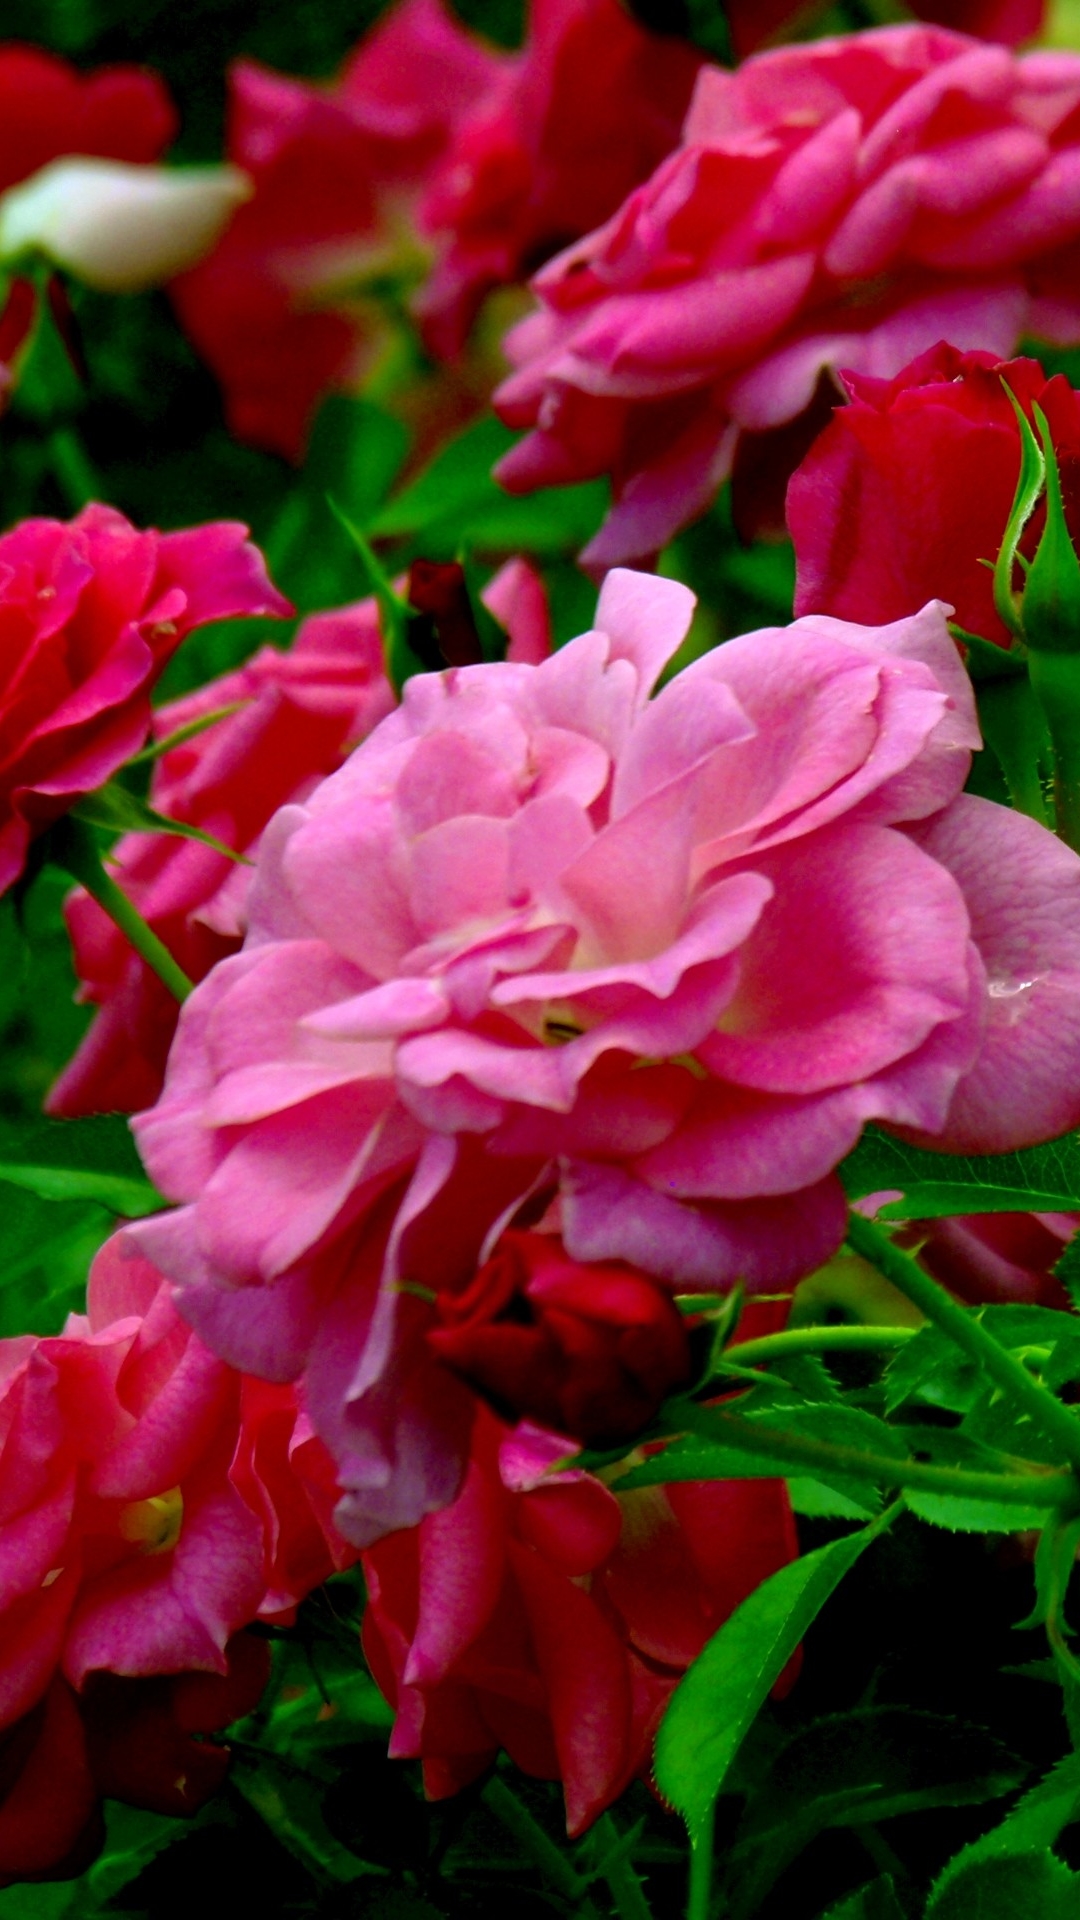 earth, rose bush, rose, flower, pink flower, stem, flowers